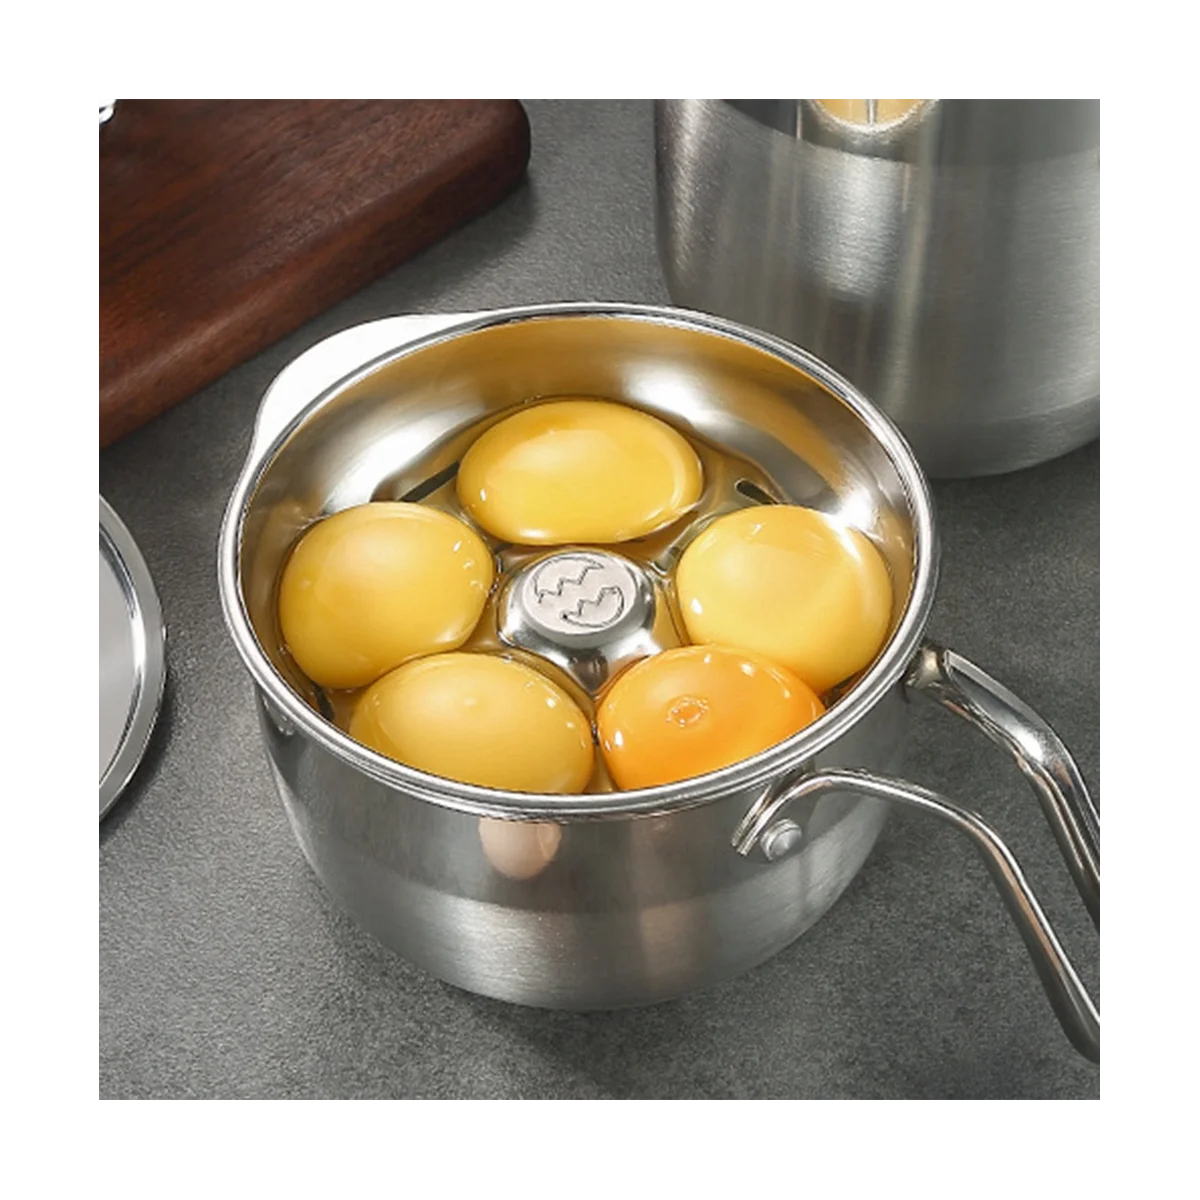  Сепараторы яиц Сепаратор яичного желтка Сепаратор яиц из нержавеющей стали может разделять несколько яиц, для приготовления пищи и выпечки на кухне 5